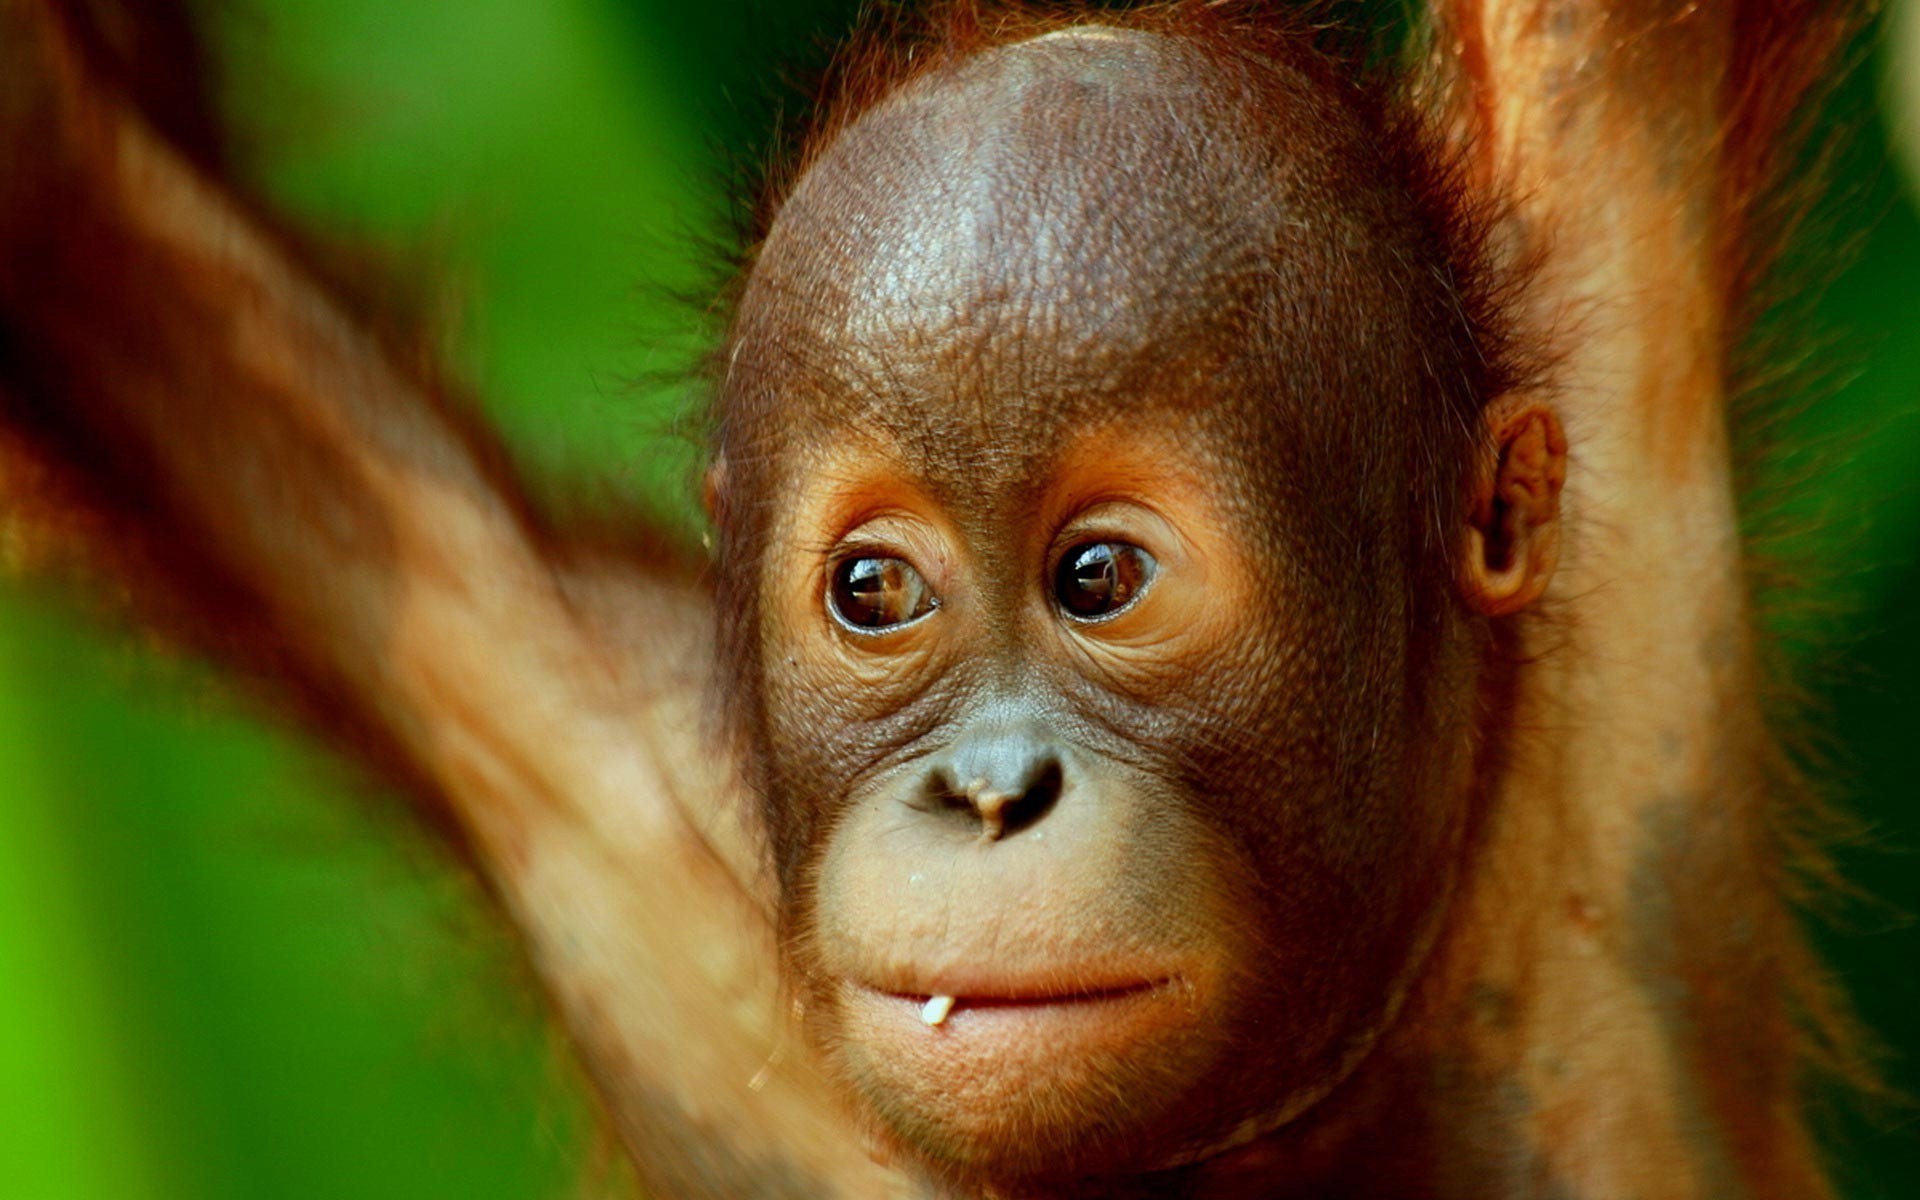  38 Baby  Orangutan  Wallpaper on WallpaperSafari